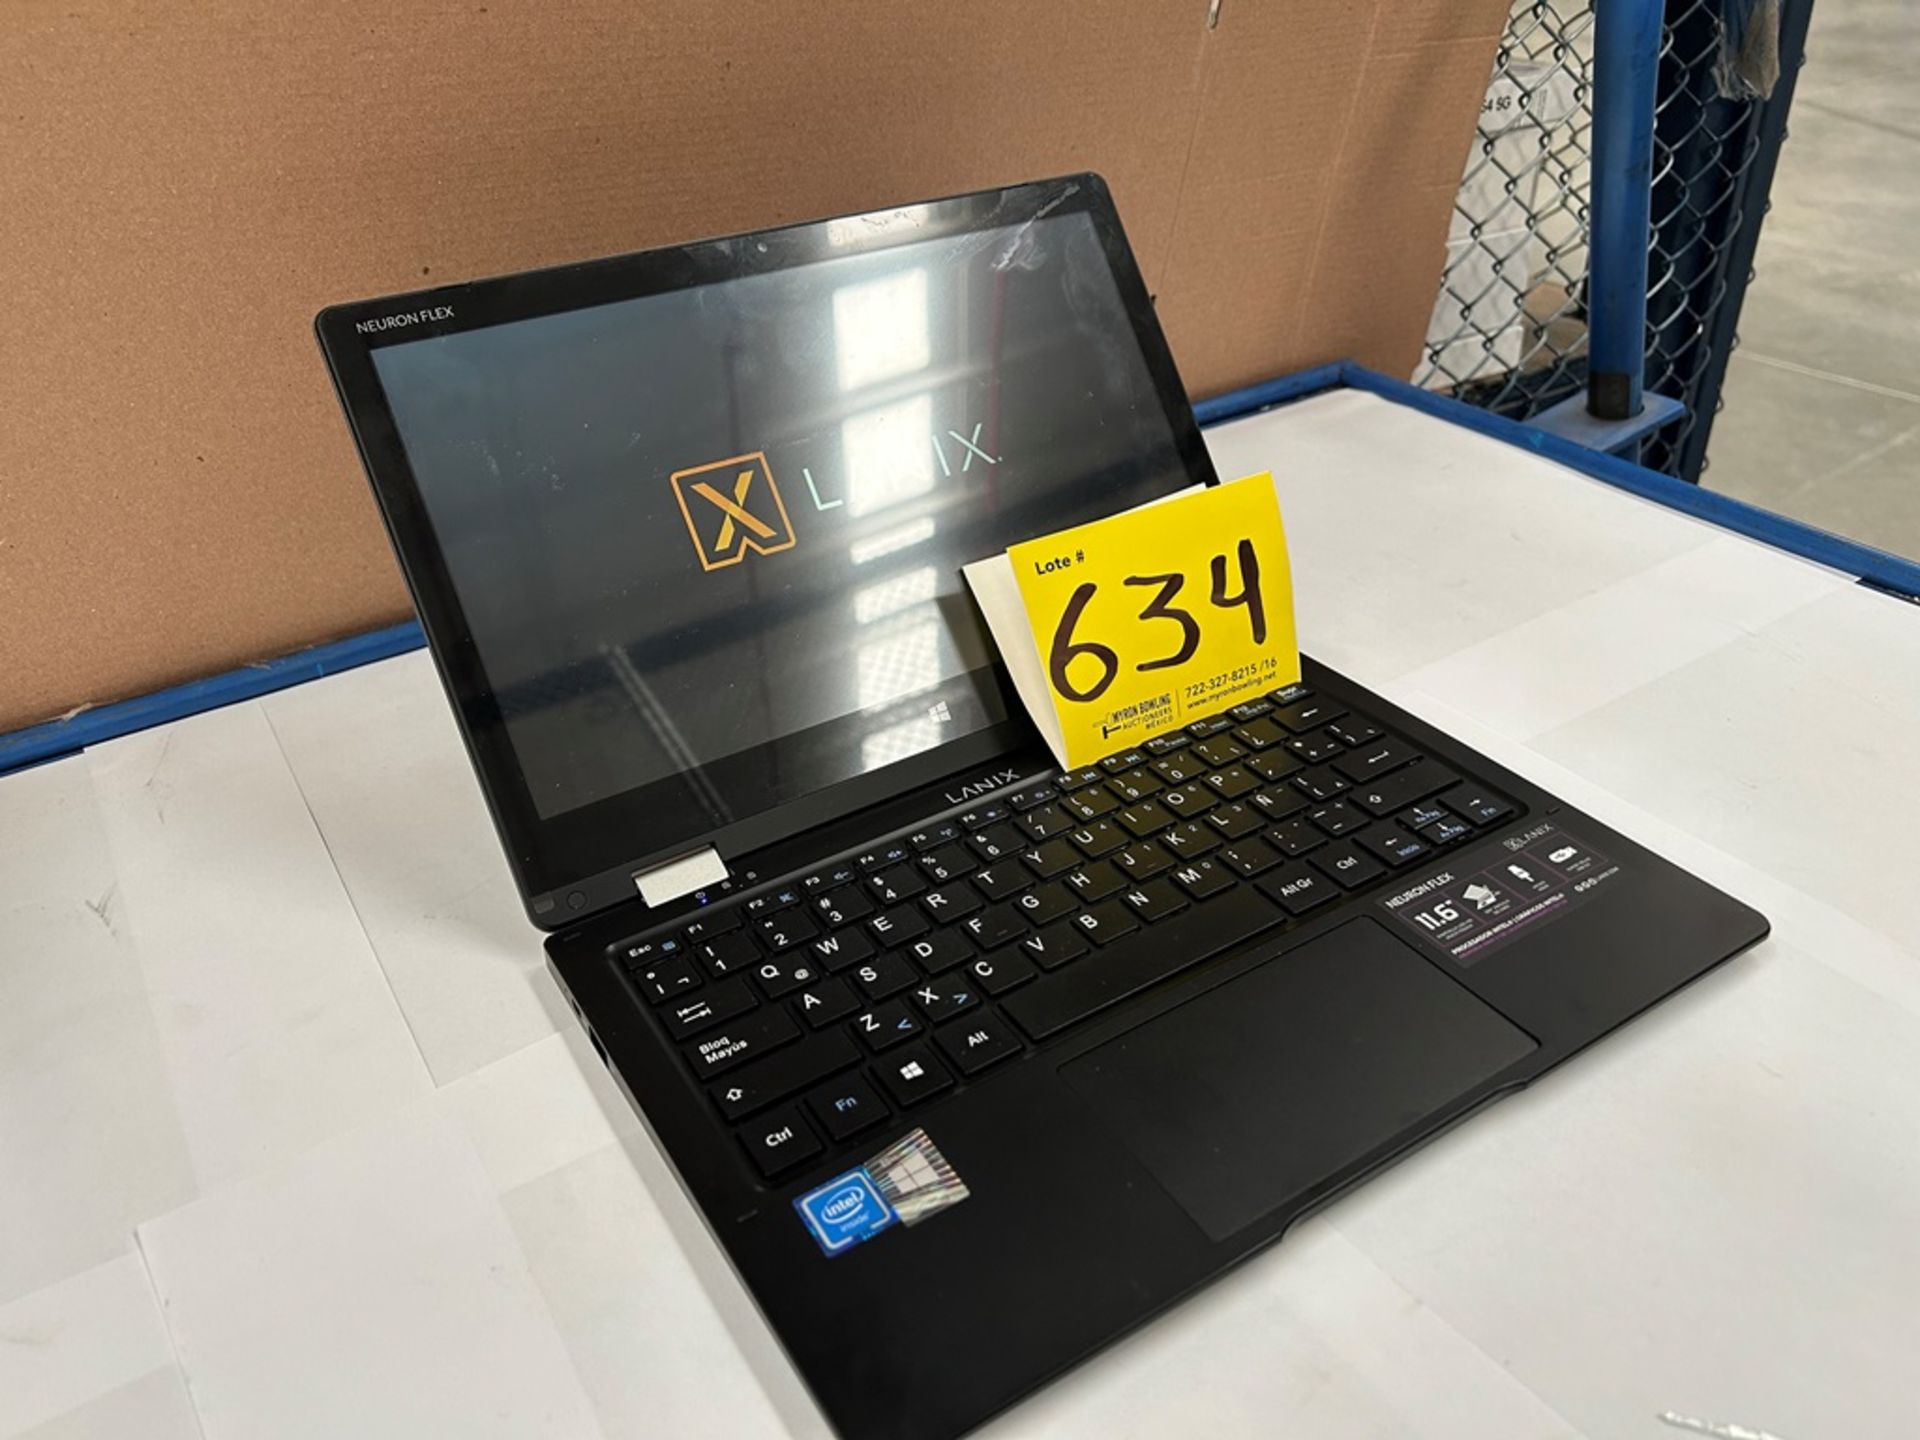 Laptop Marca LANIX, Modelo NEURONFLEX, con capacidad de 128 GB de almacenamiento, 4 GB de RAM (Equi - Image 3 of 8